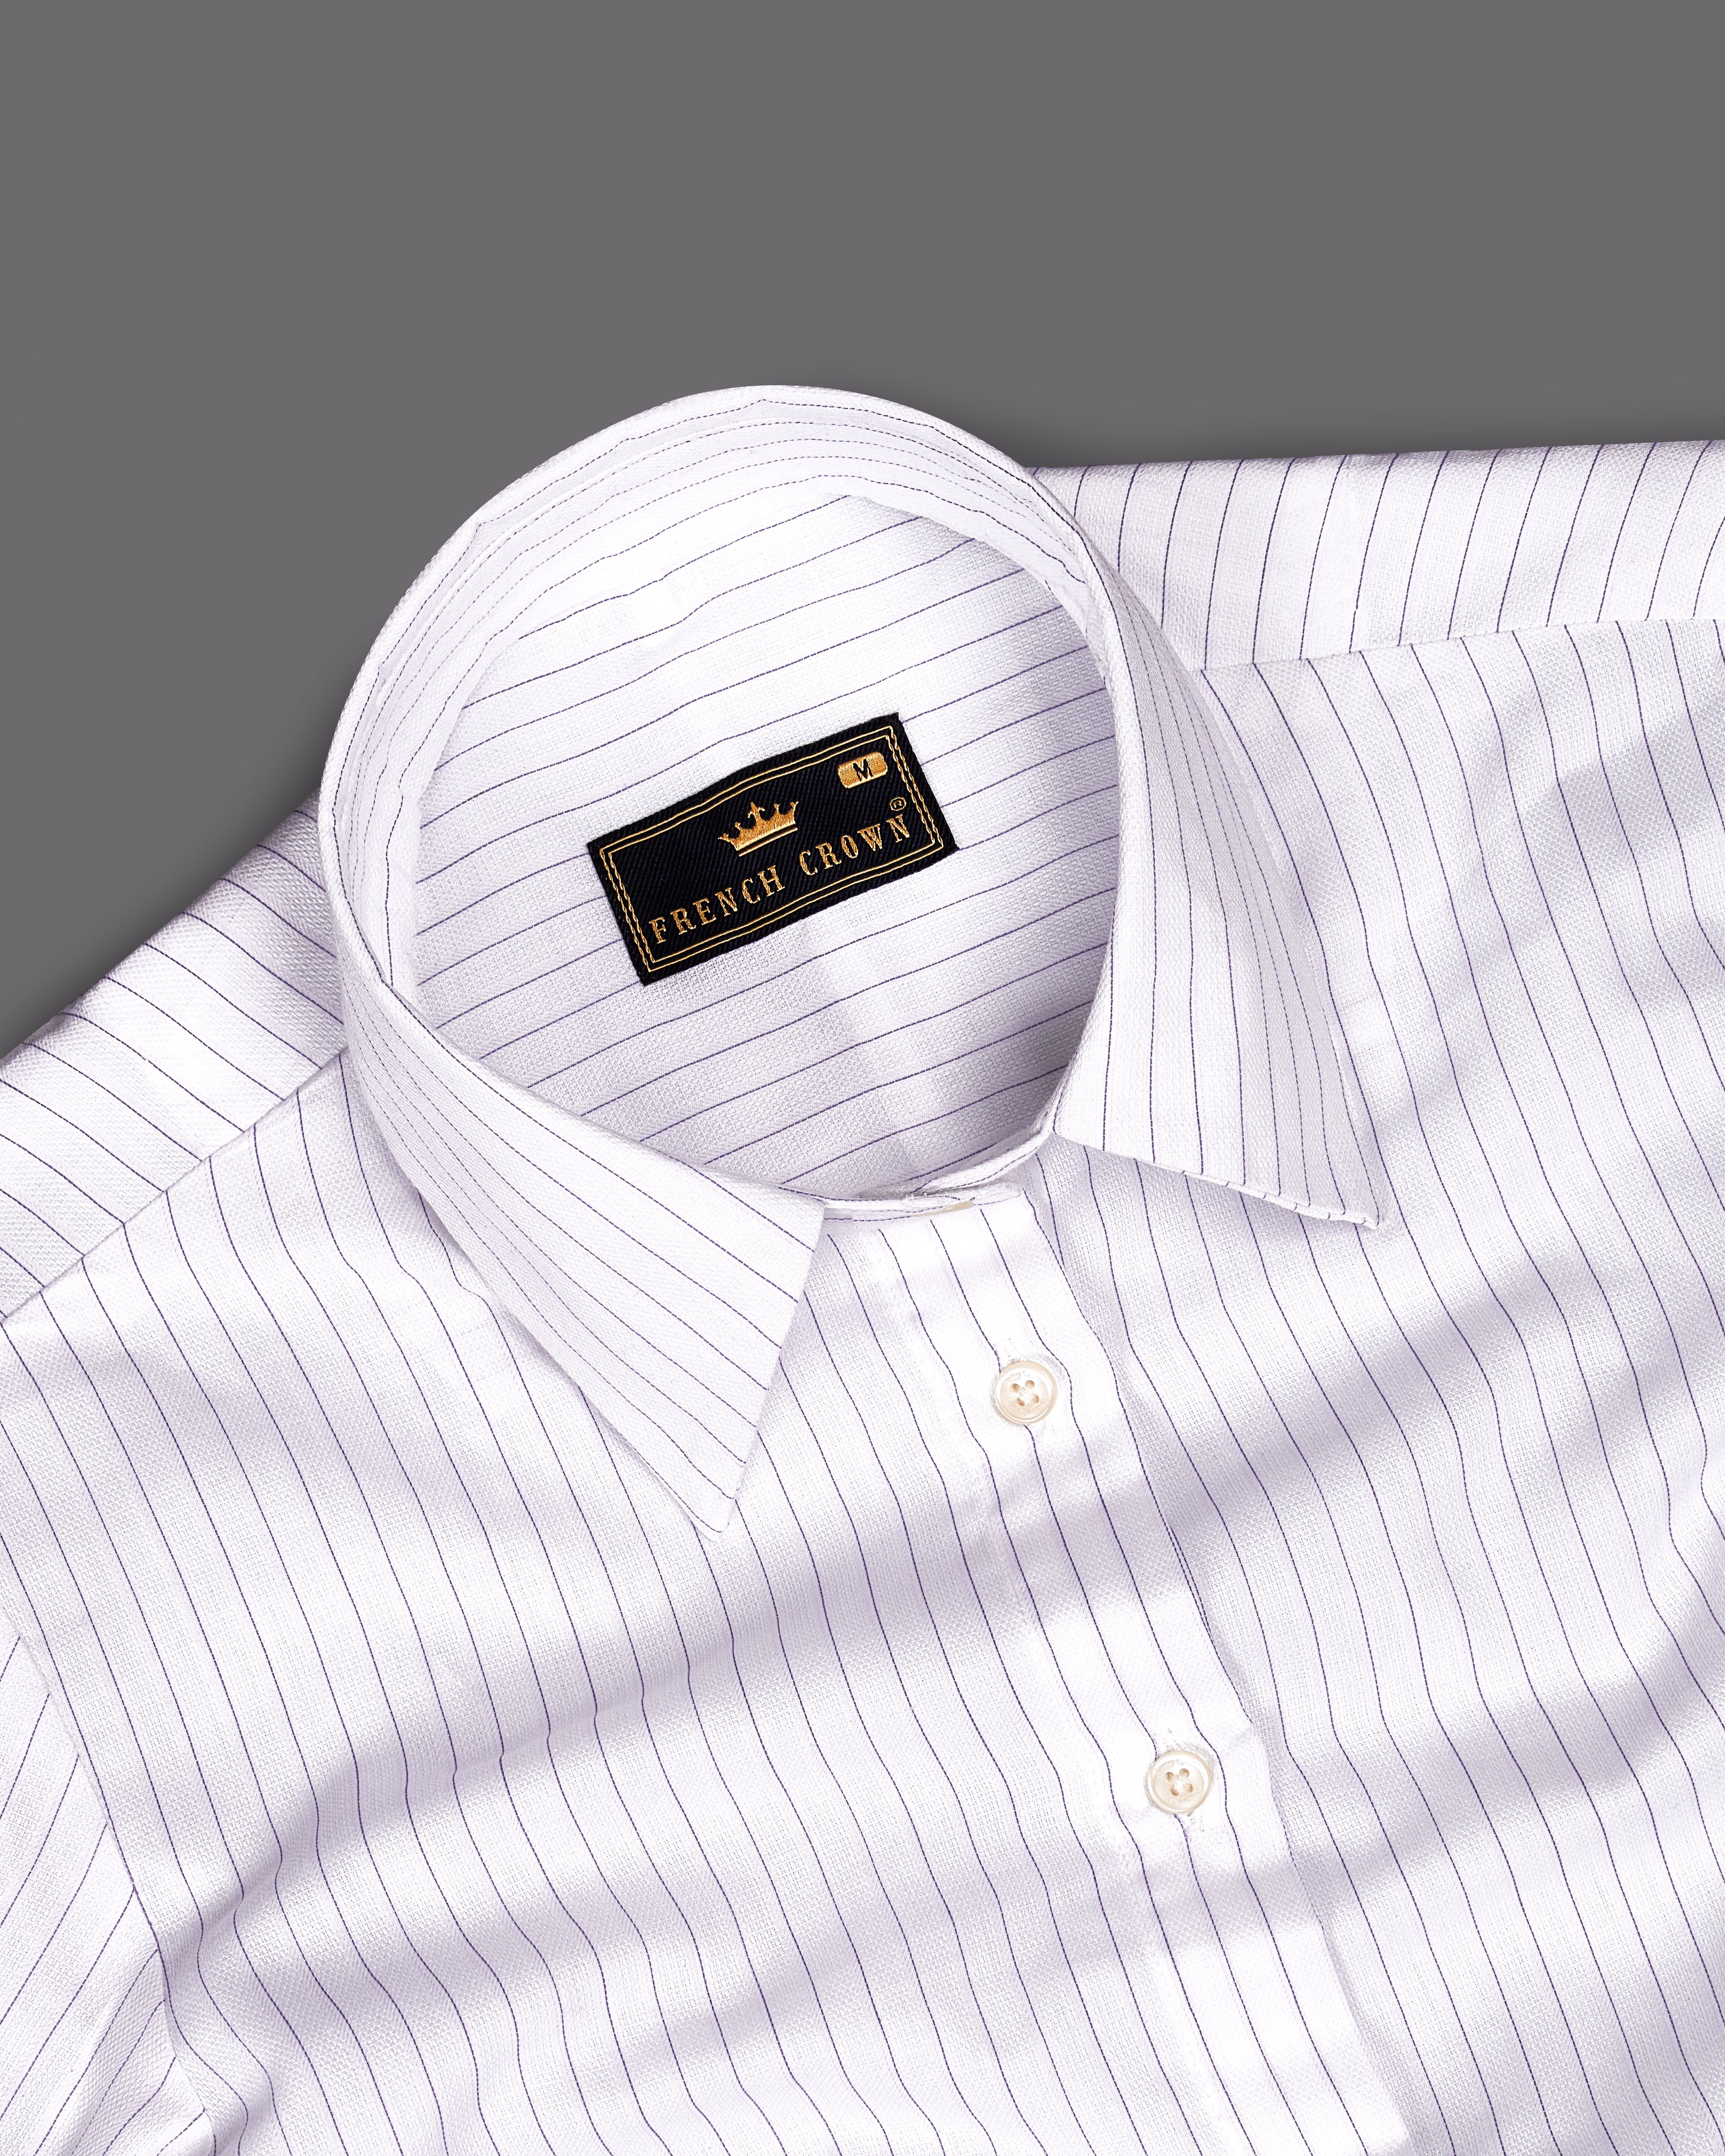 Bright White Striped Premium Cotton Shirt WS030-32, WS030-34, WS030-36, WS030-38, WS030-40, WS030-42